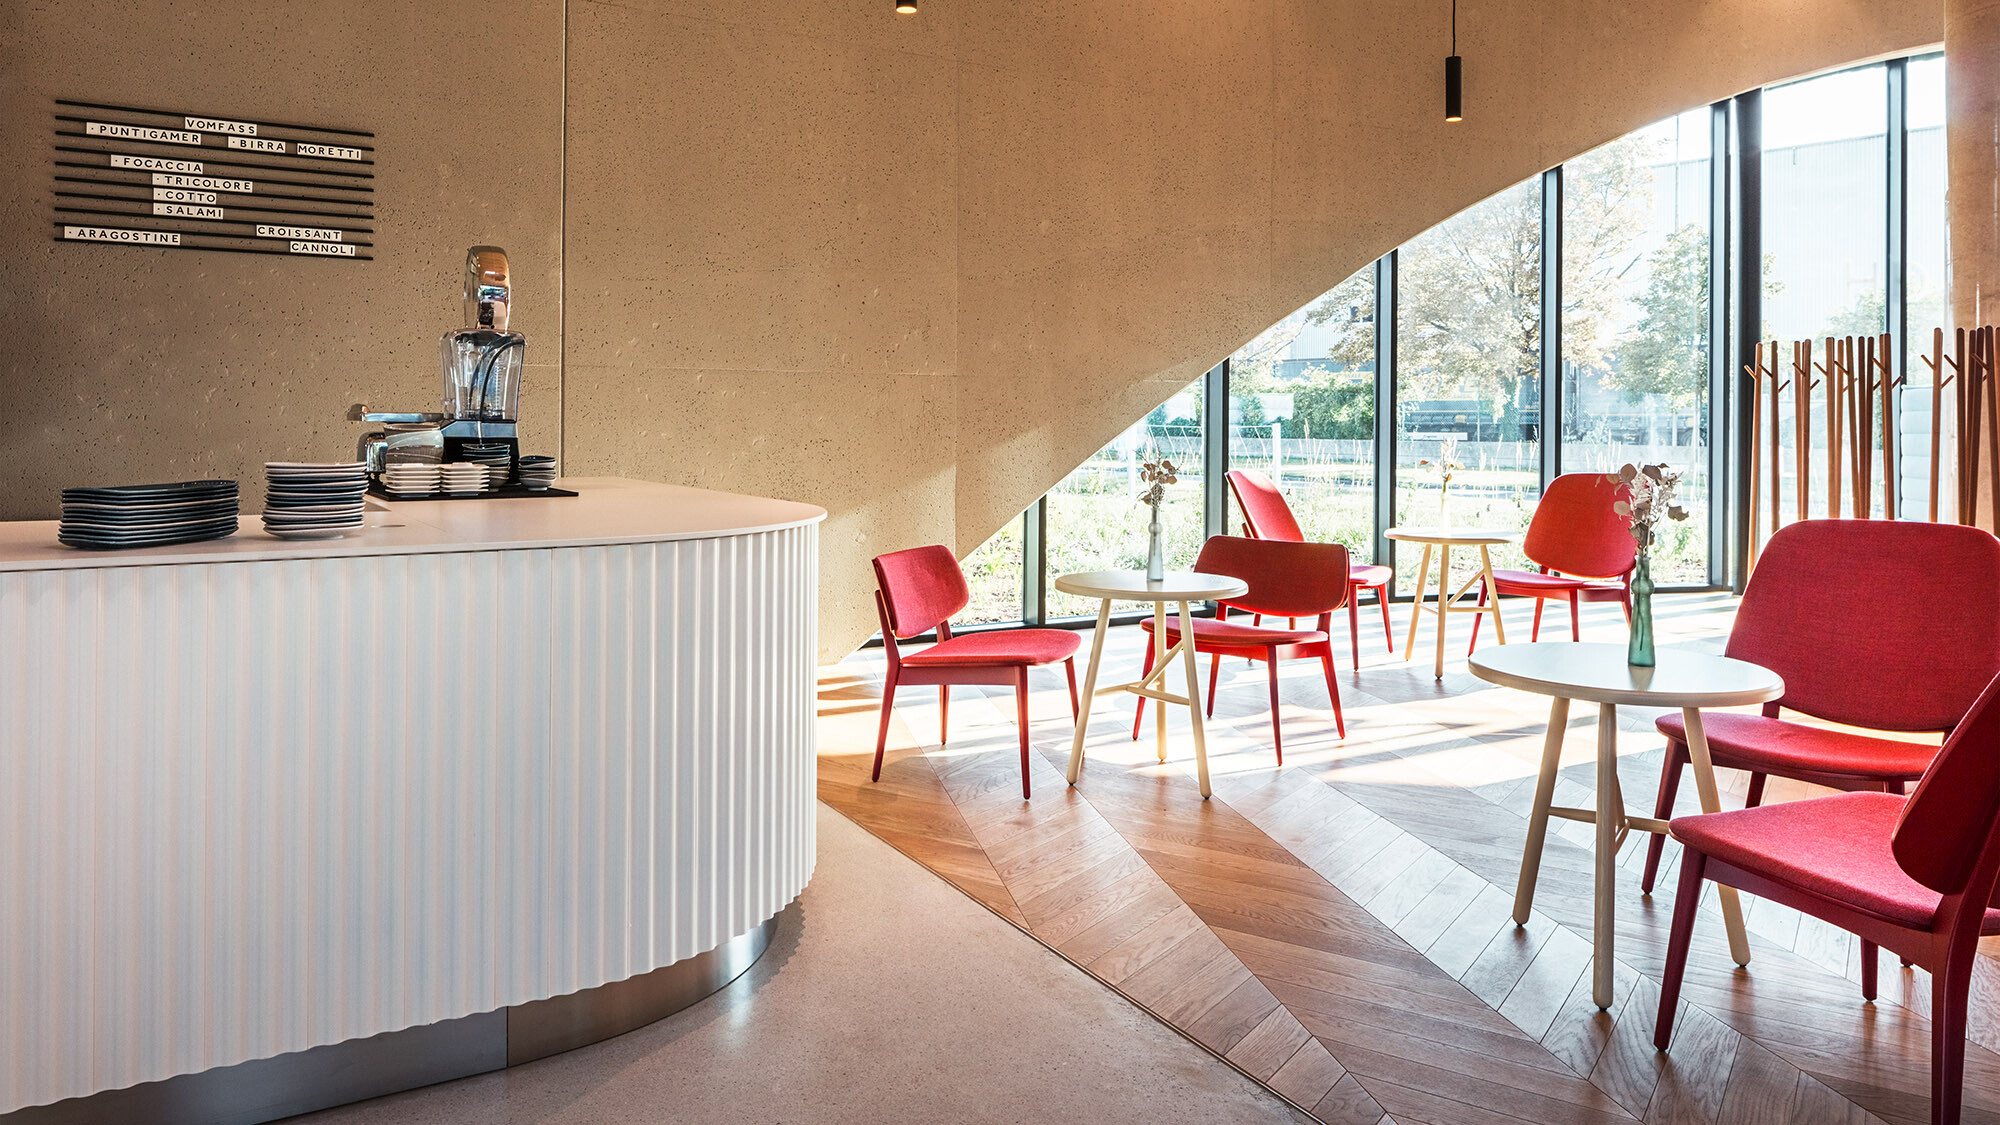 Une des salles du restaurant avec un comptoir, des chaises rouges et un sol en parquet, derrière lequel on peut voir une des fenêtres en arc de cercle.